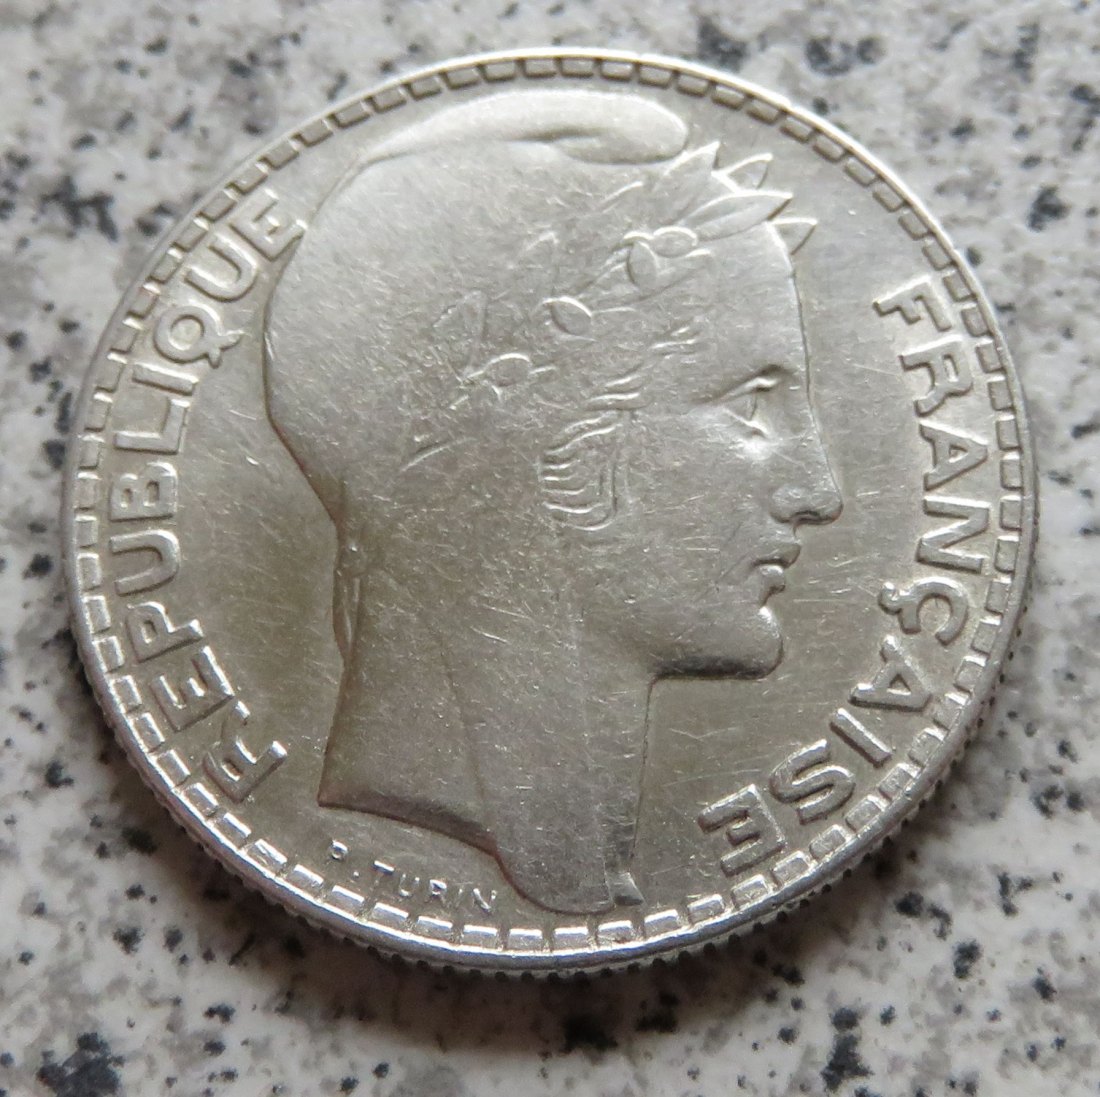  Frankreich 10 Francs 1931, Silber   